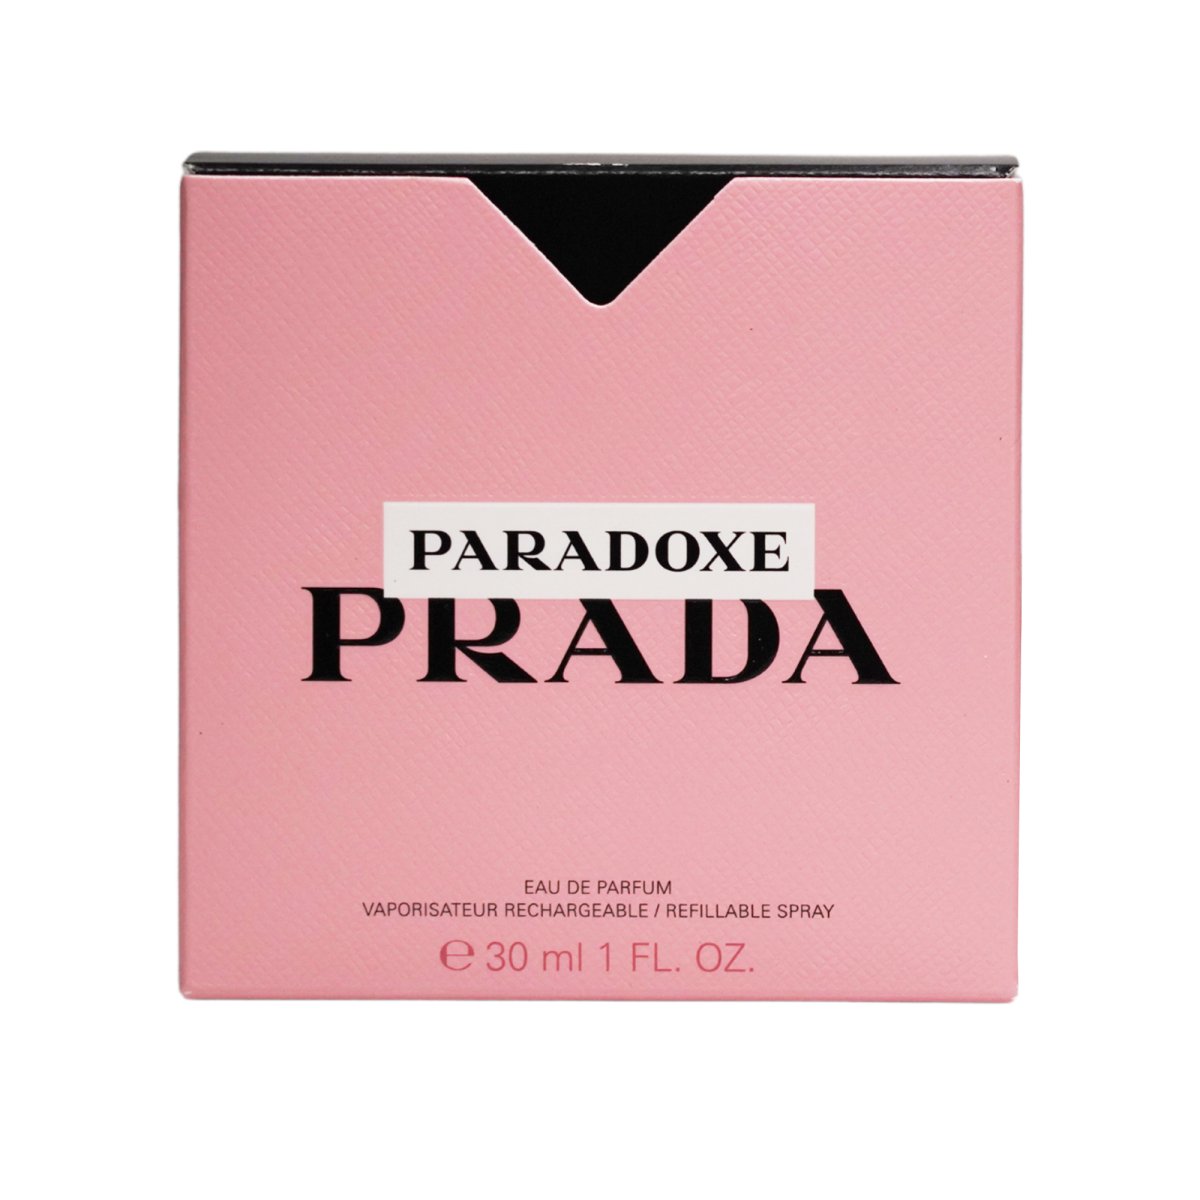 Prada Paradoxe 30 ml Eau de Parfum Spray - Prada - Fragrance